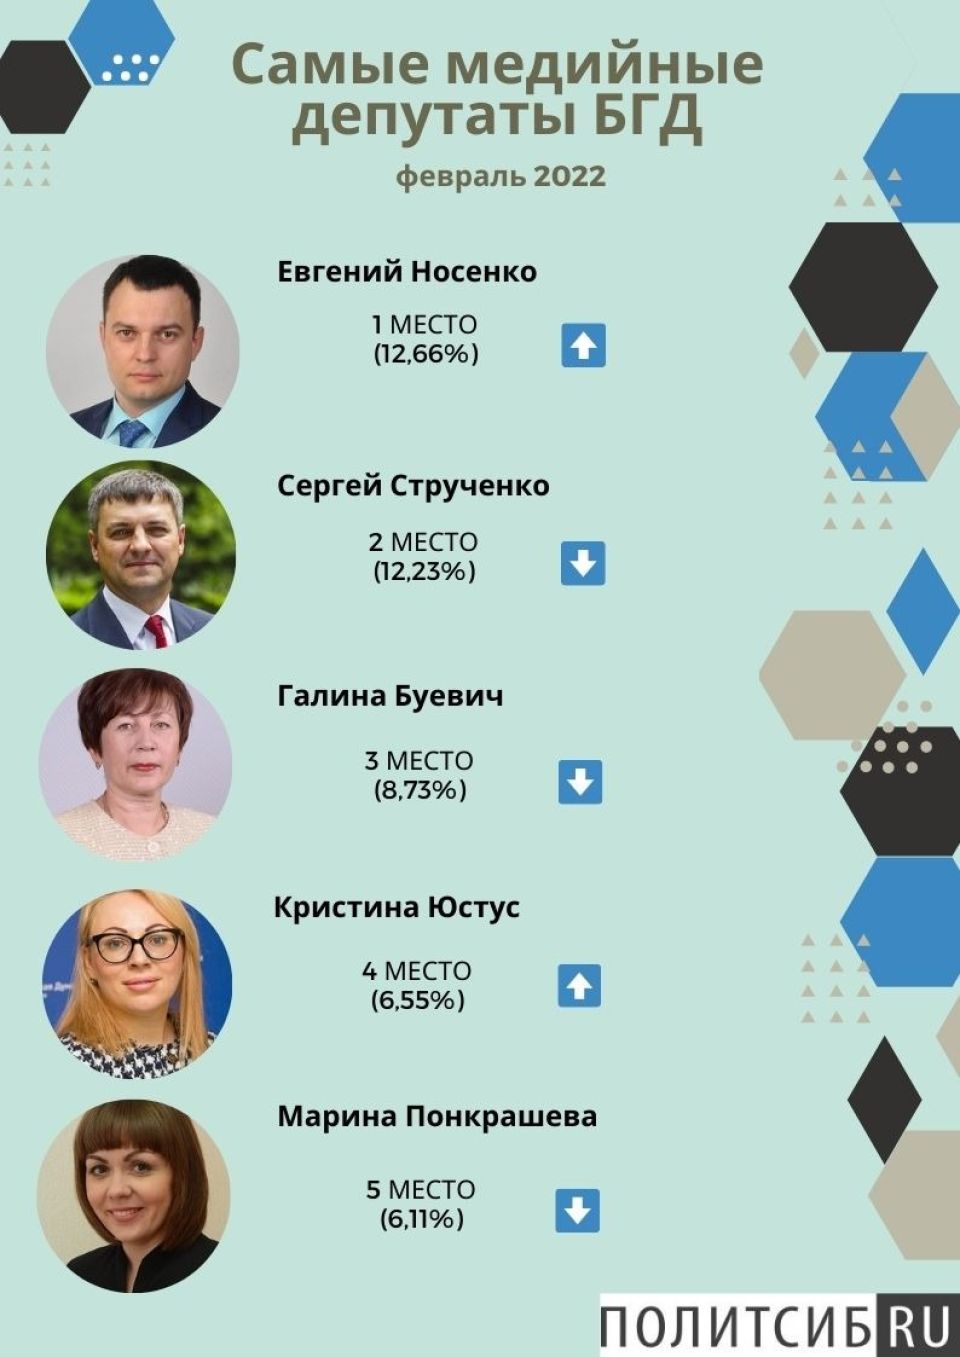 Рейтинг медийности депутатов БГД, февраль 2022 года